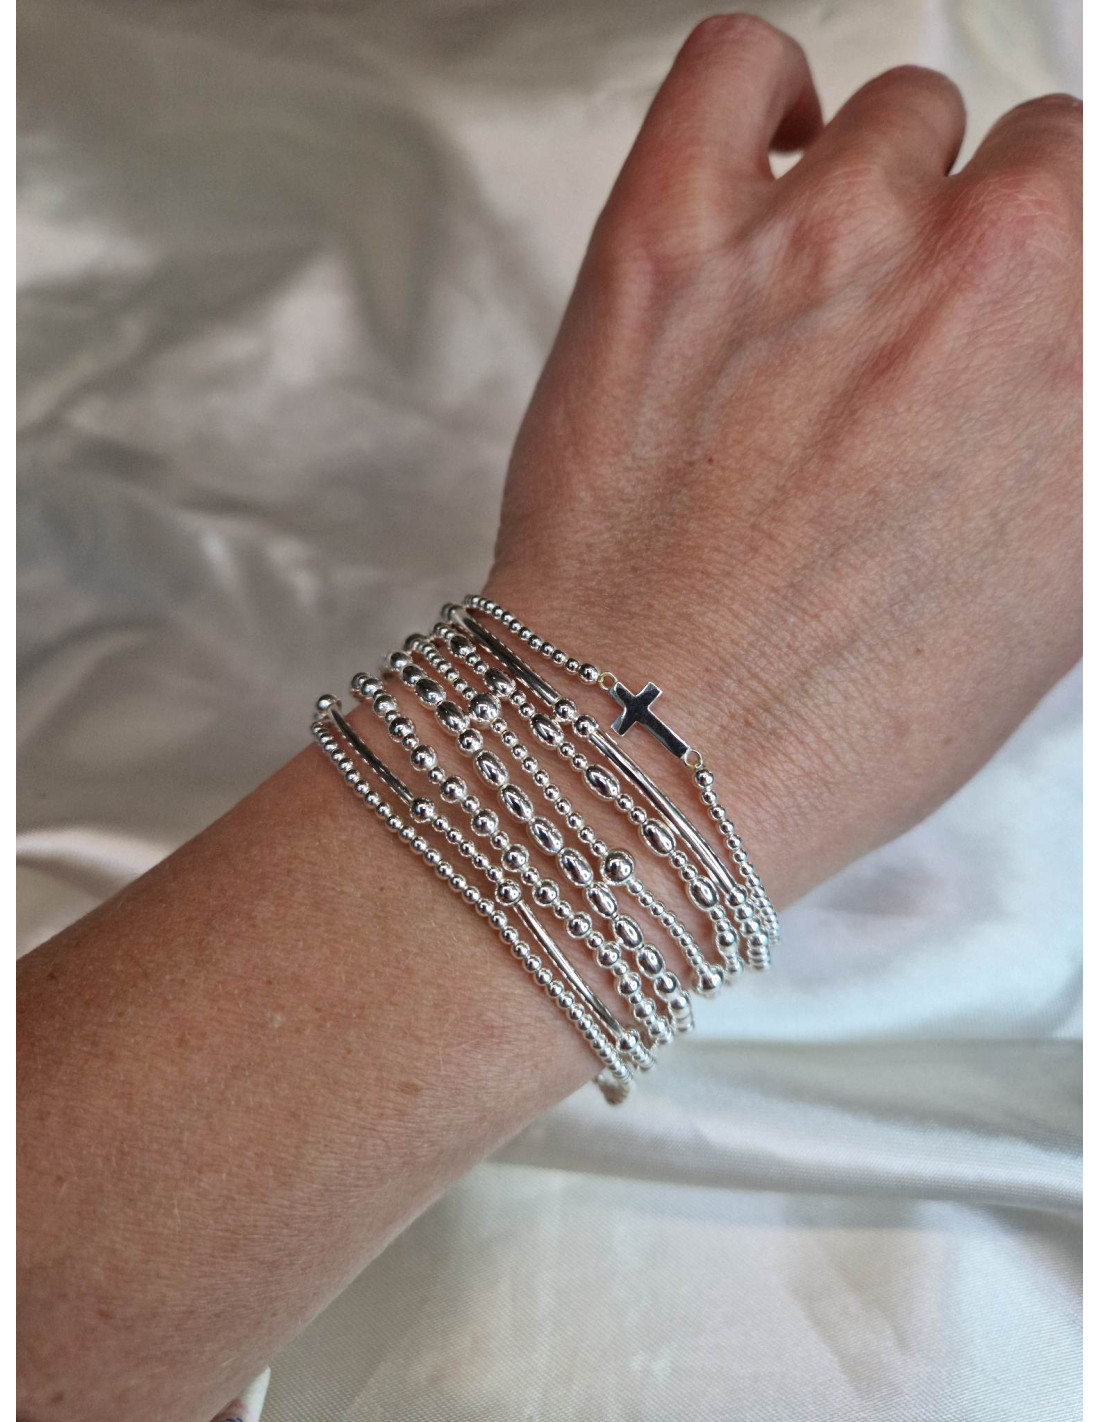 Bracelet Femme Perles Argent et Cœur Mode - Elise8